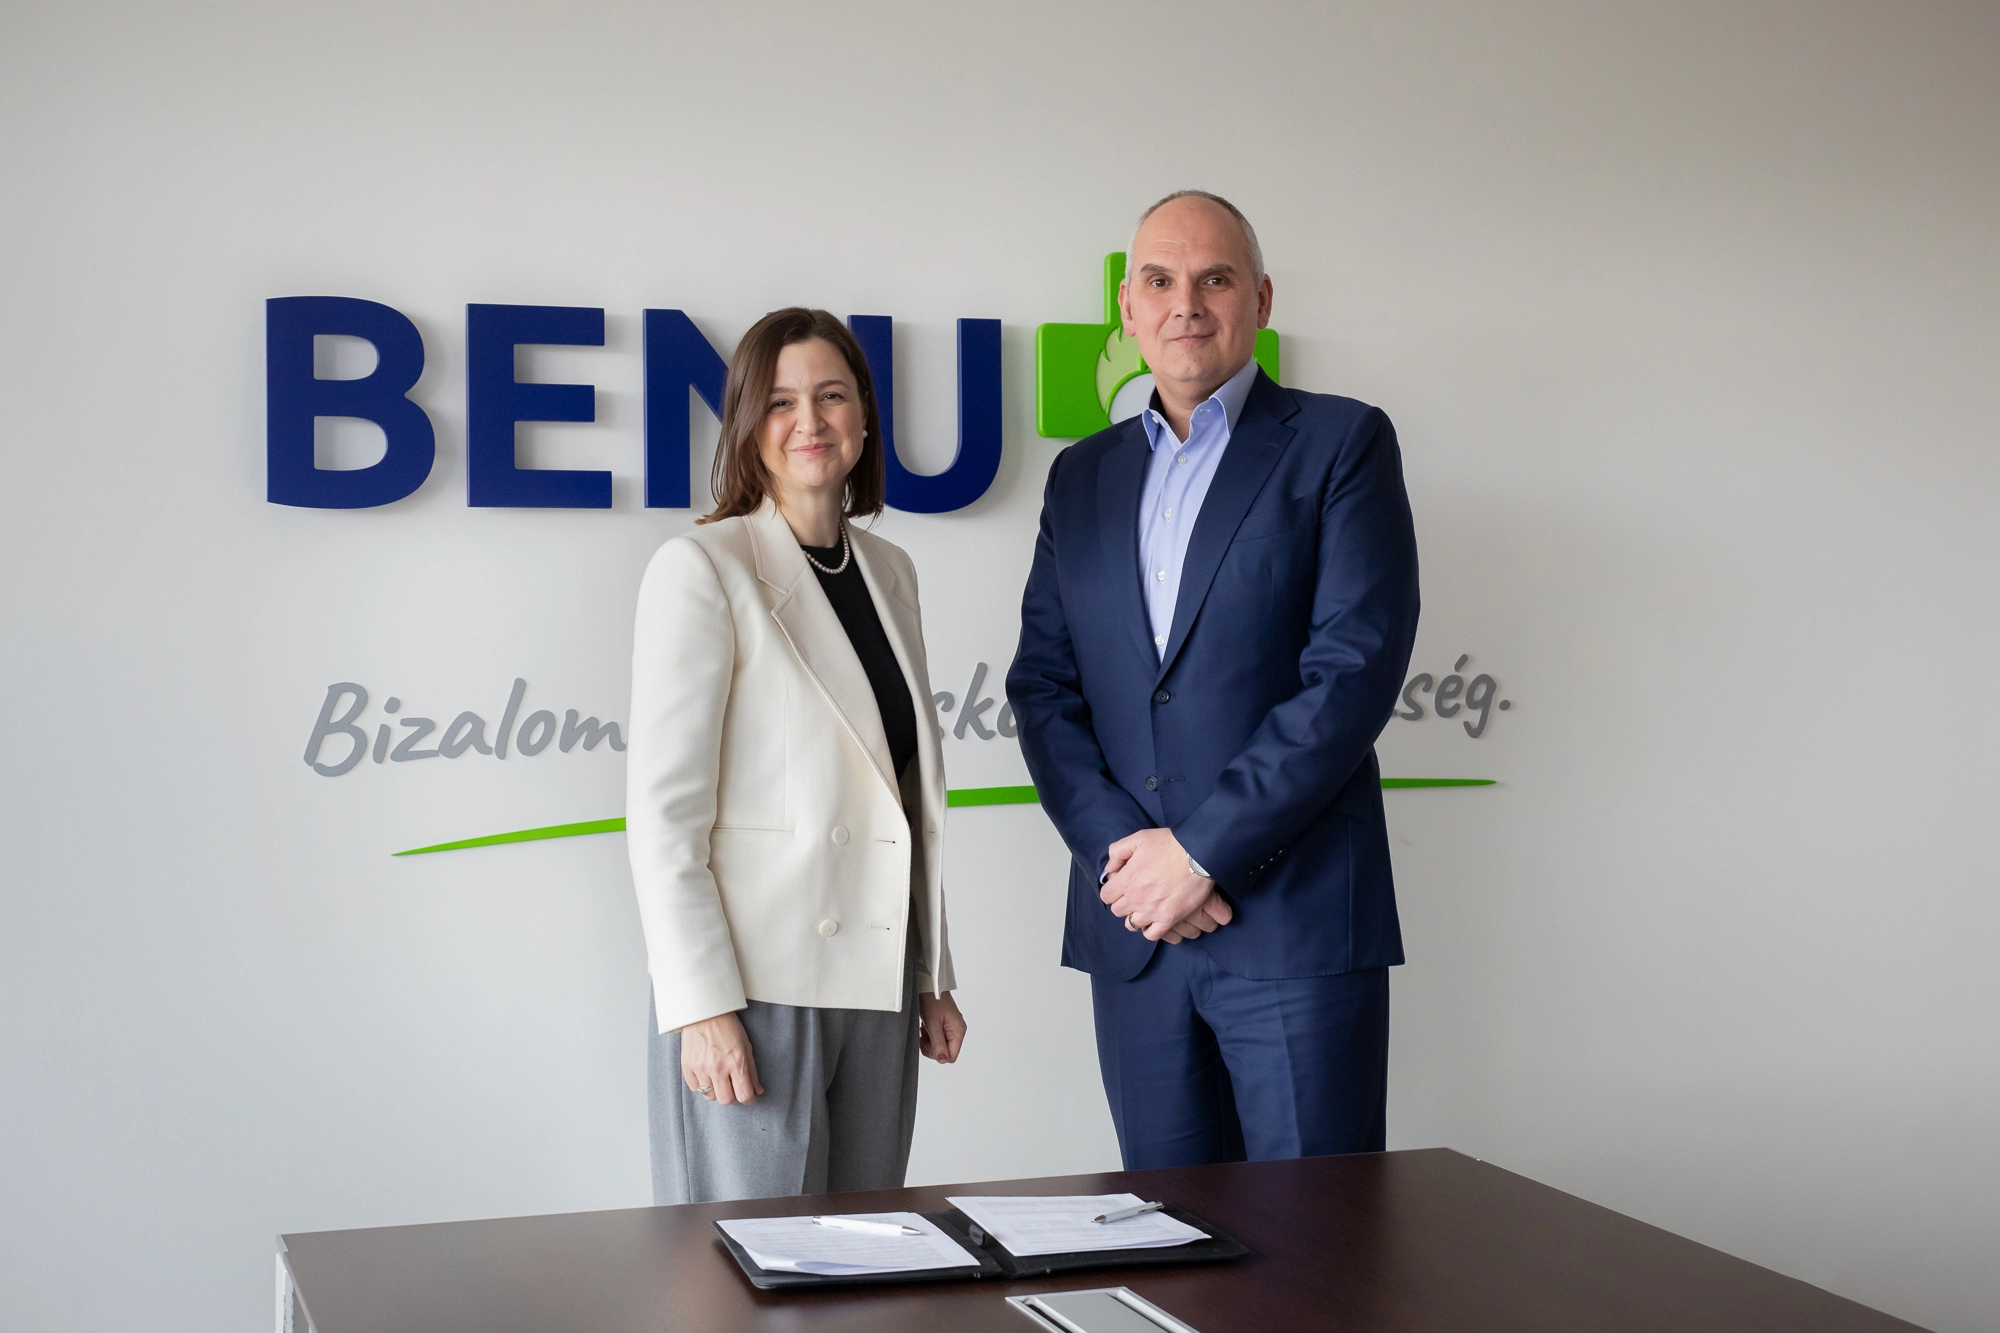 Együttműködési megállapodást írt alá a BENU és a Foglaljorvost.hu